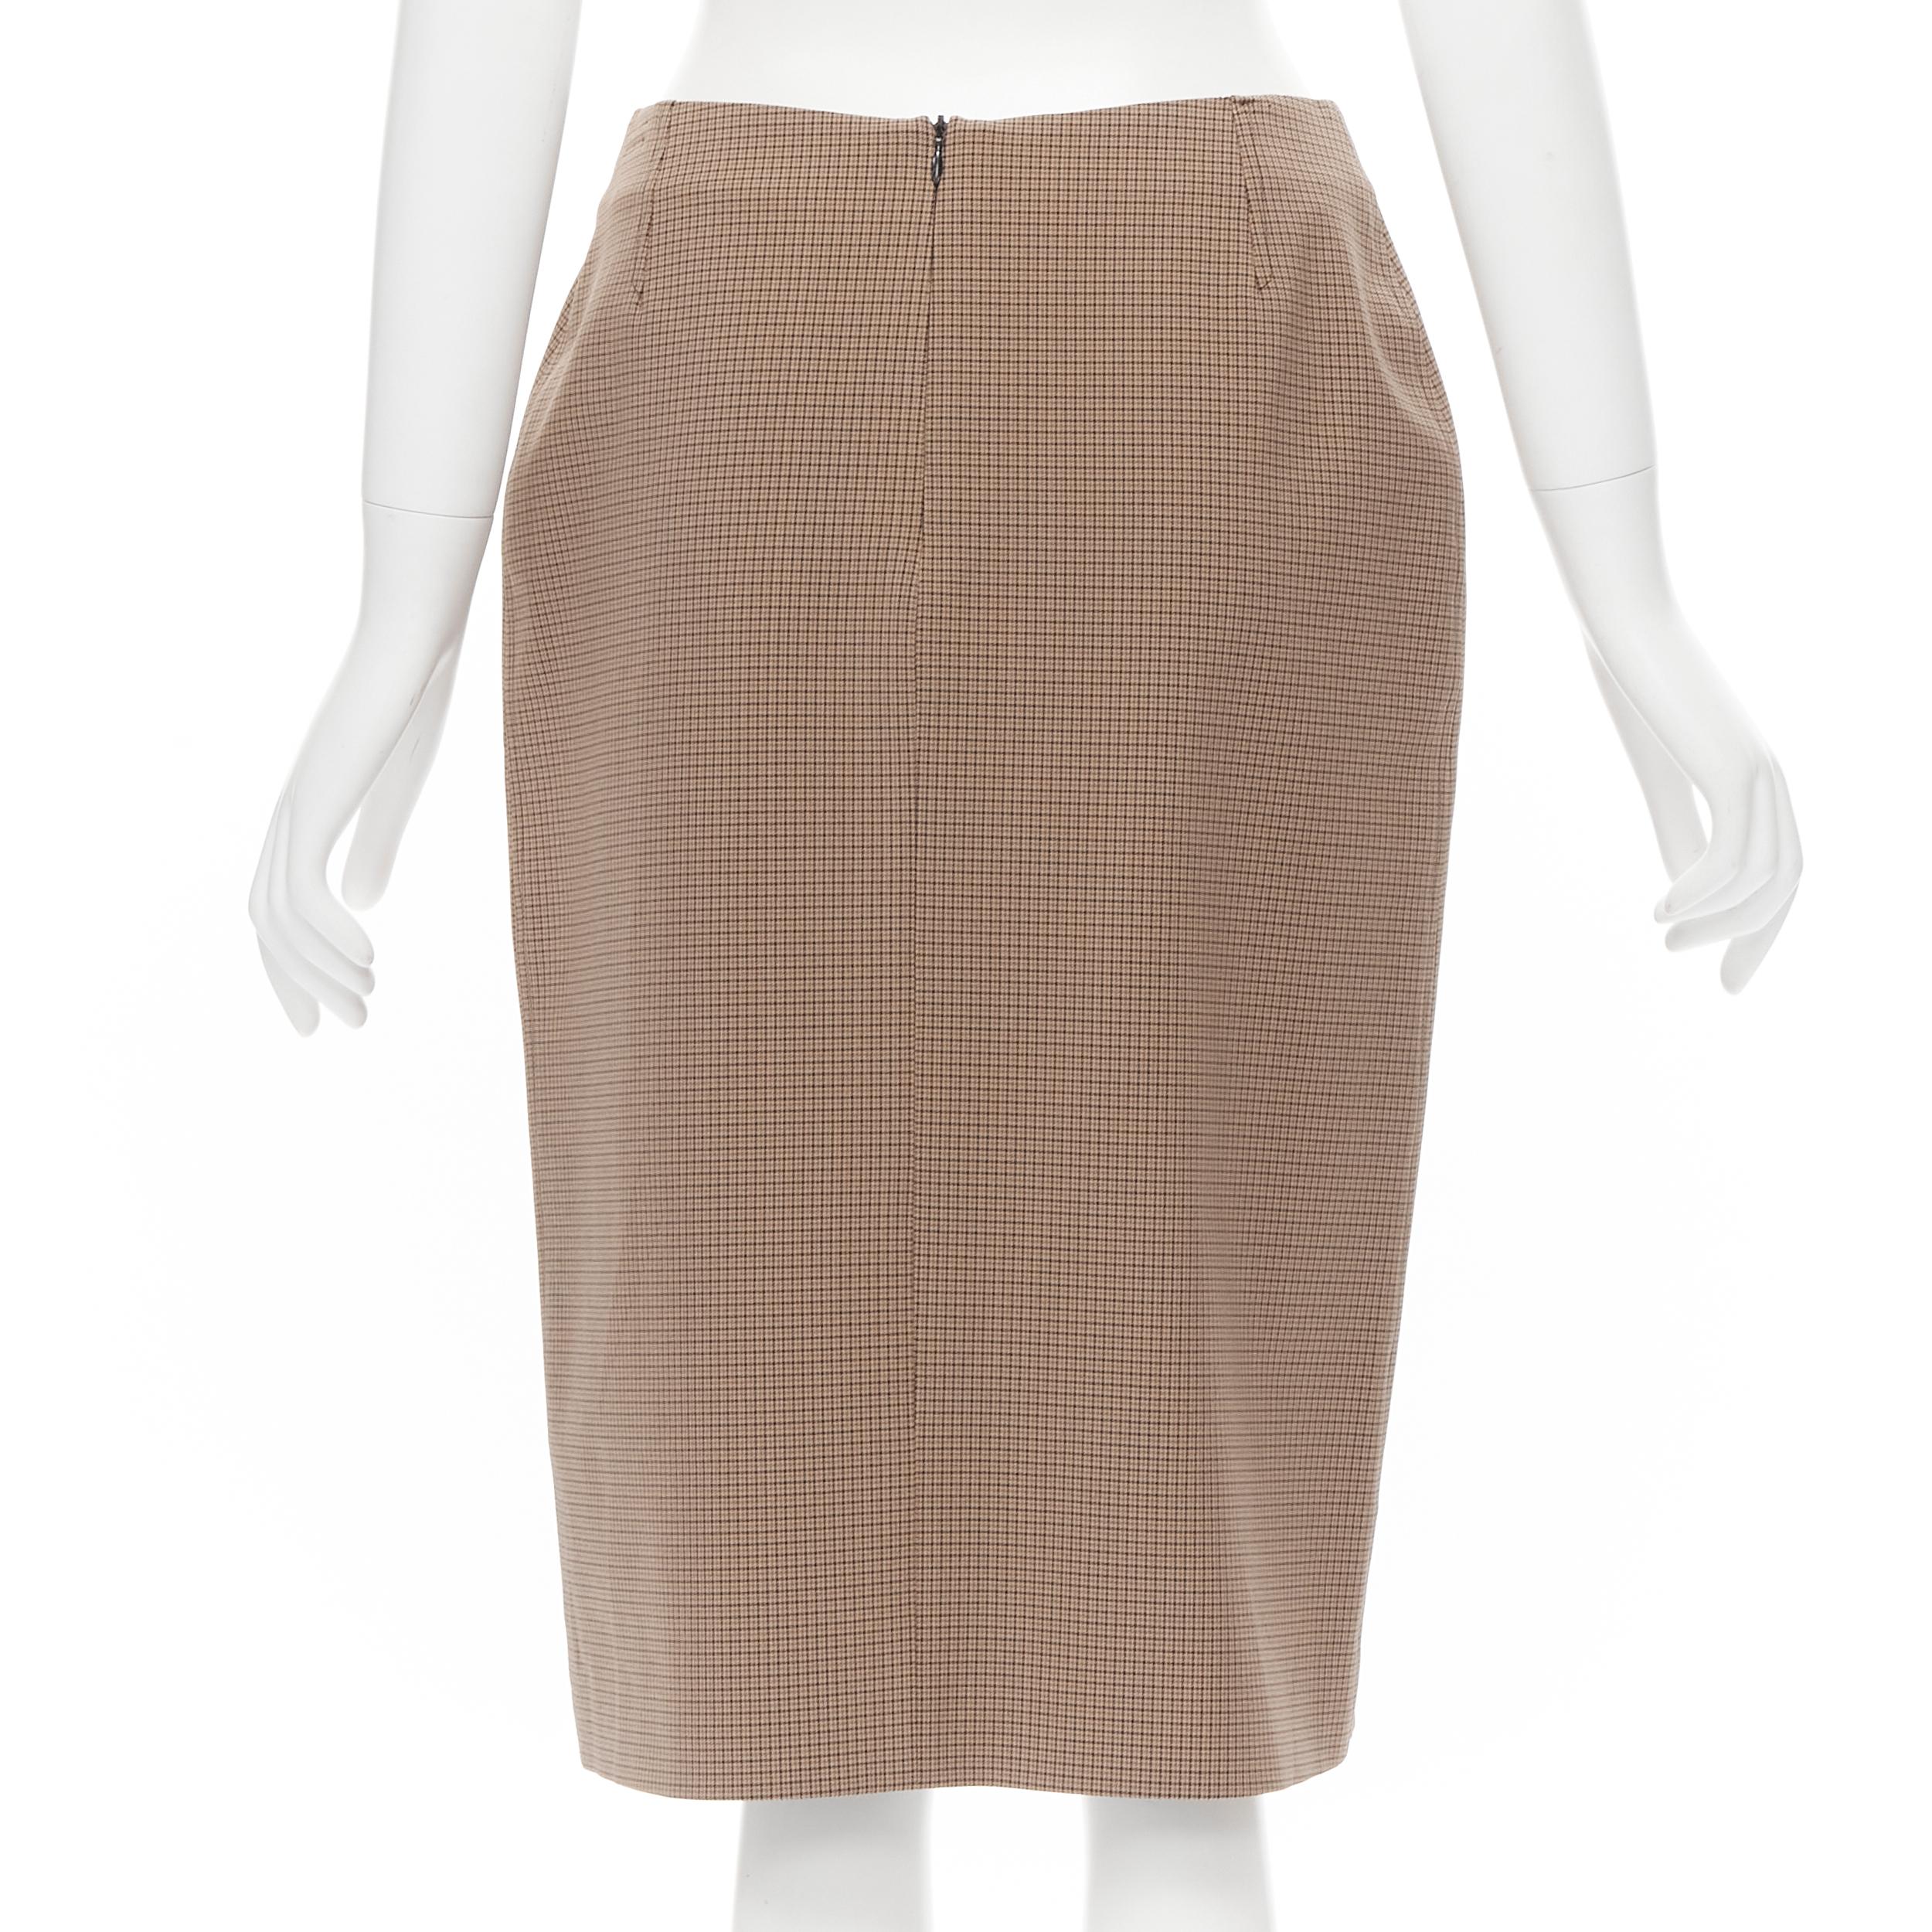 Brown PRADA brown gingham check crepe dual pocket knee length skirt IT42 M